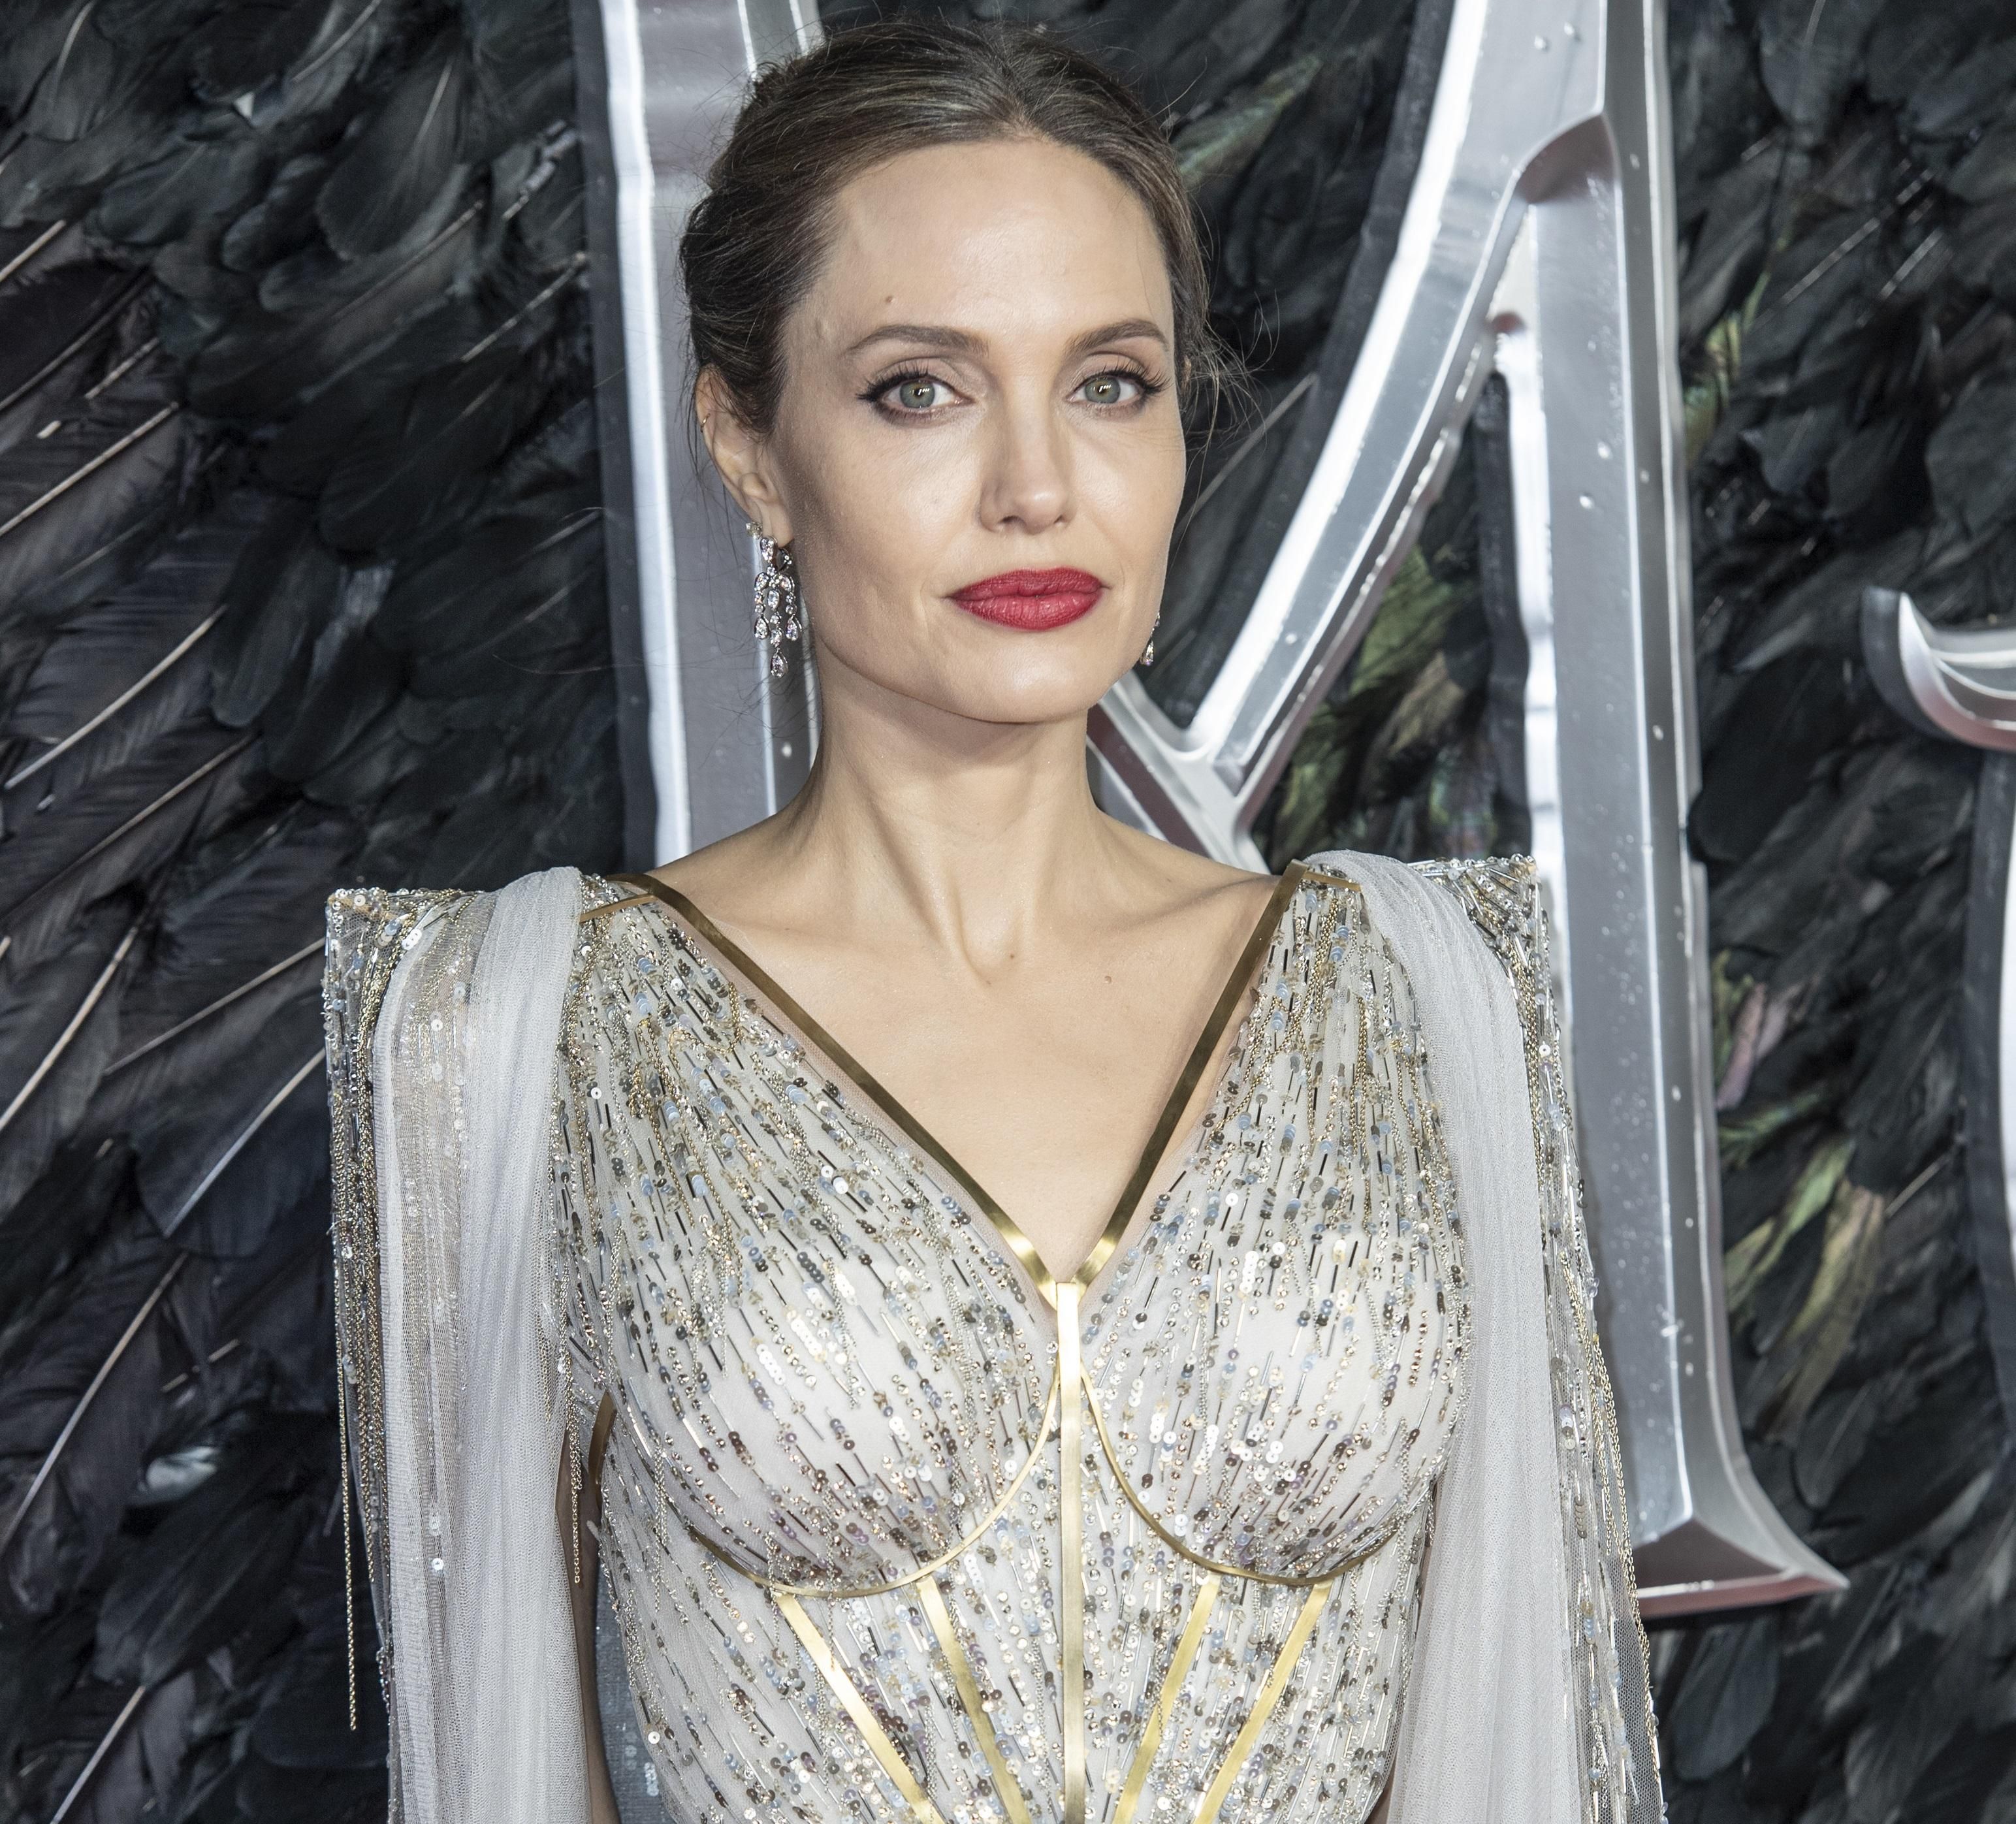 Анджелину Джоли эвакуировали со съемочной площадки за взрывного устройства